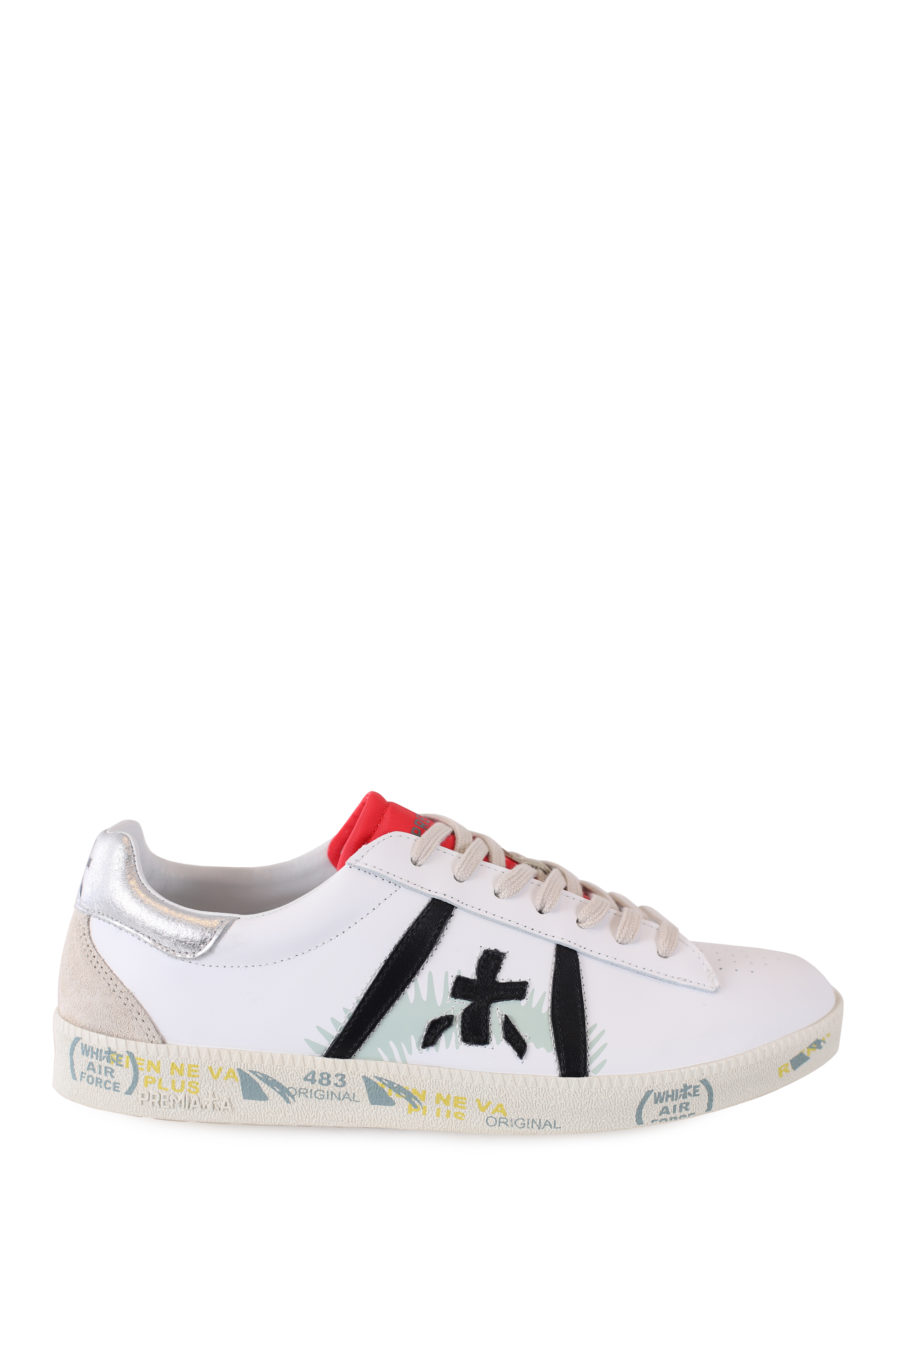 Zapatillas blancas con detalle plateado "Andy" - IMG 7062